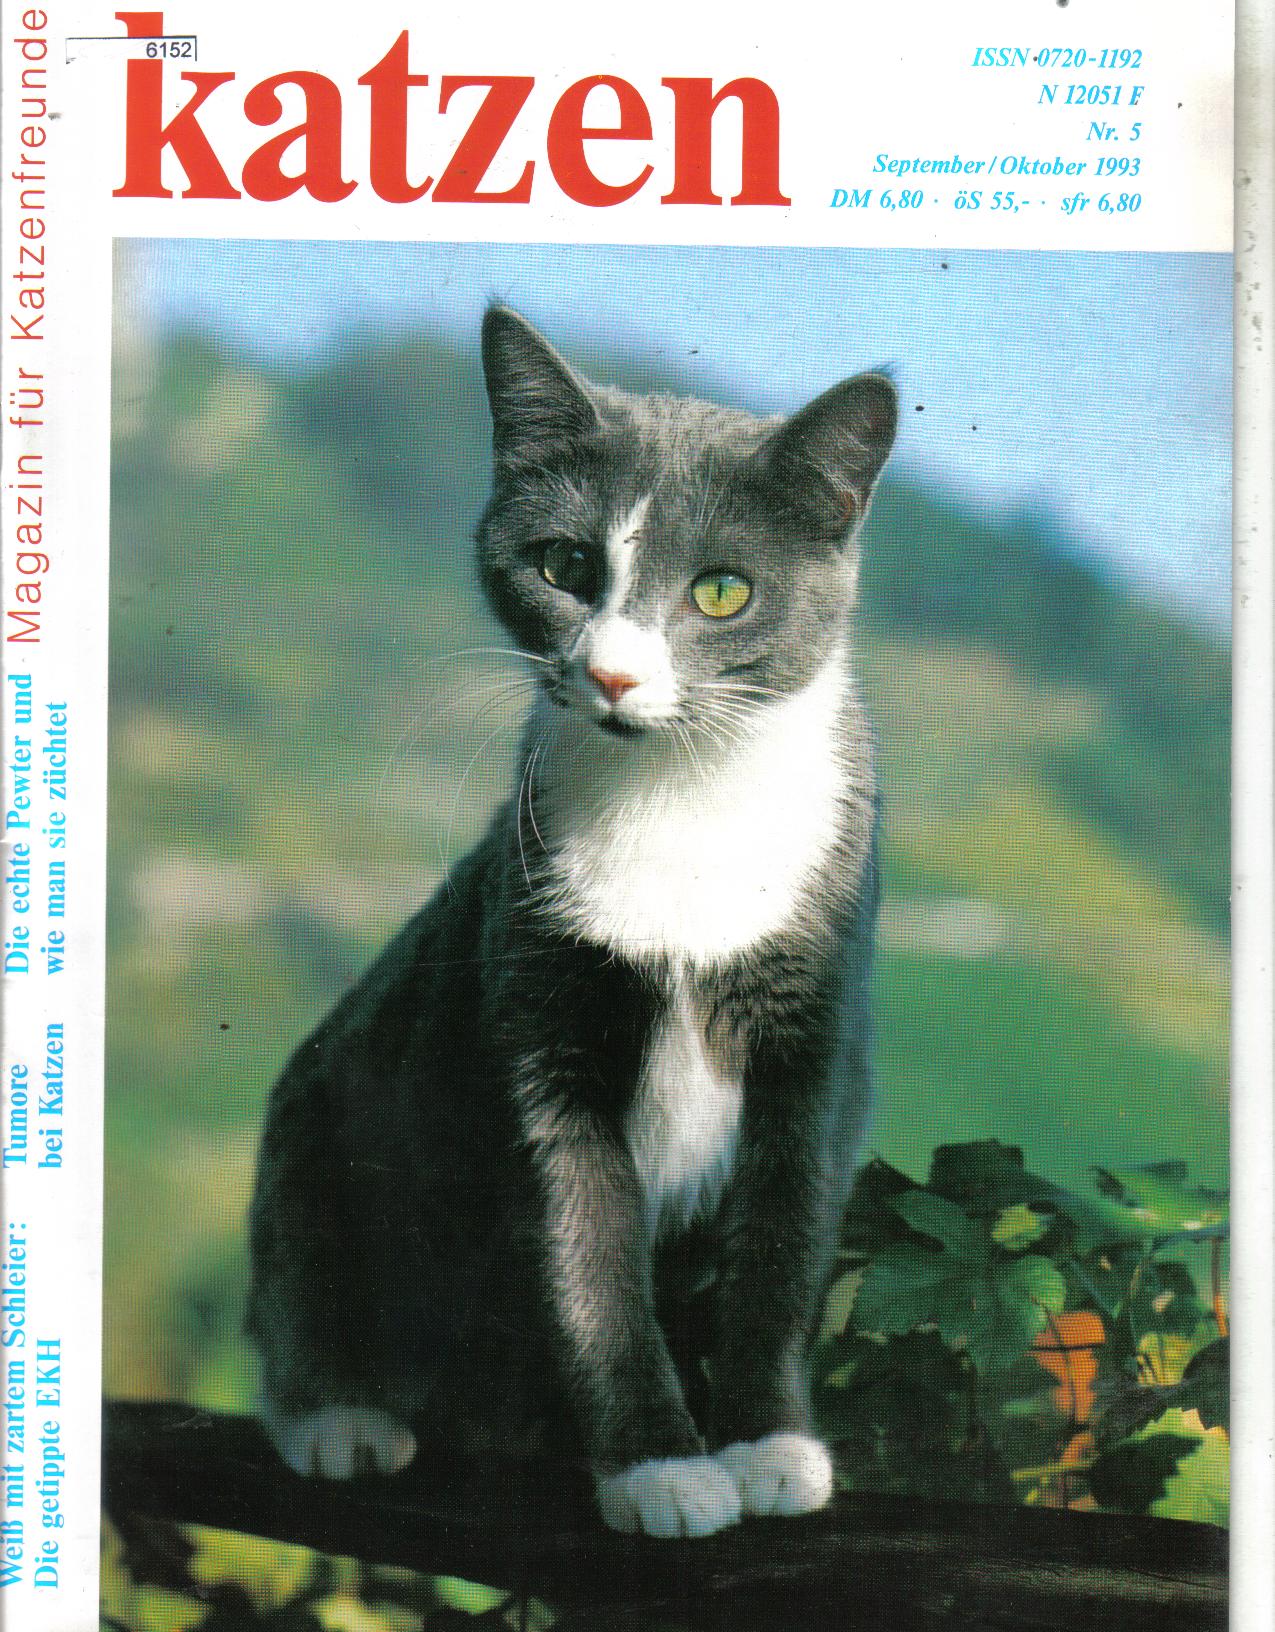 katzen Magazin fuer Katzenfreunde Nr 5 / 1993 